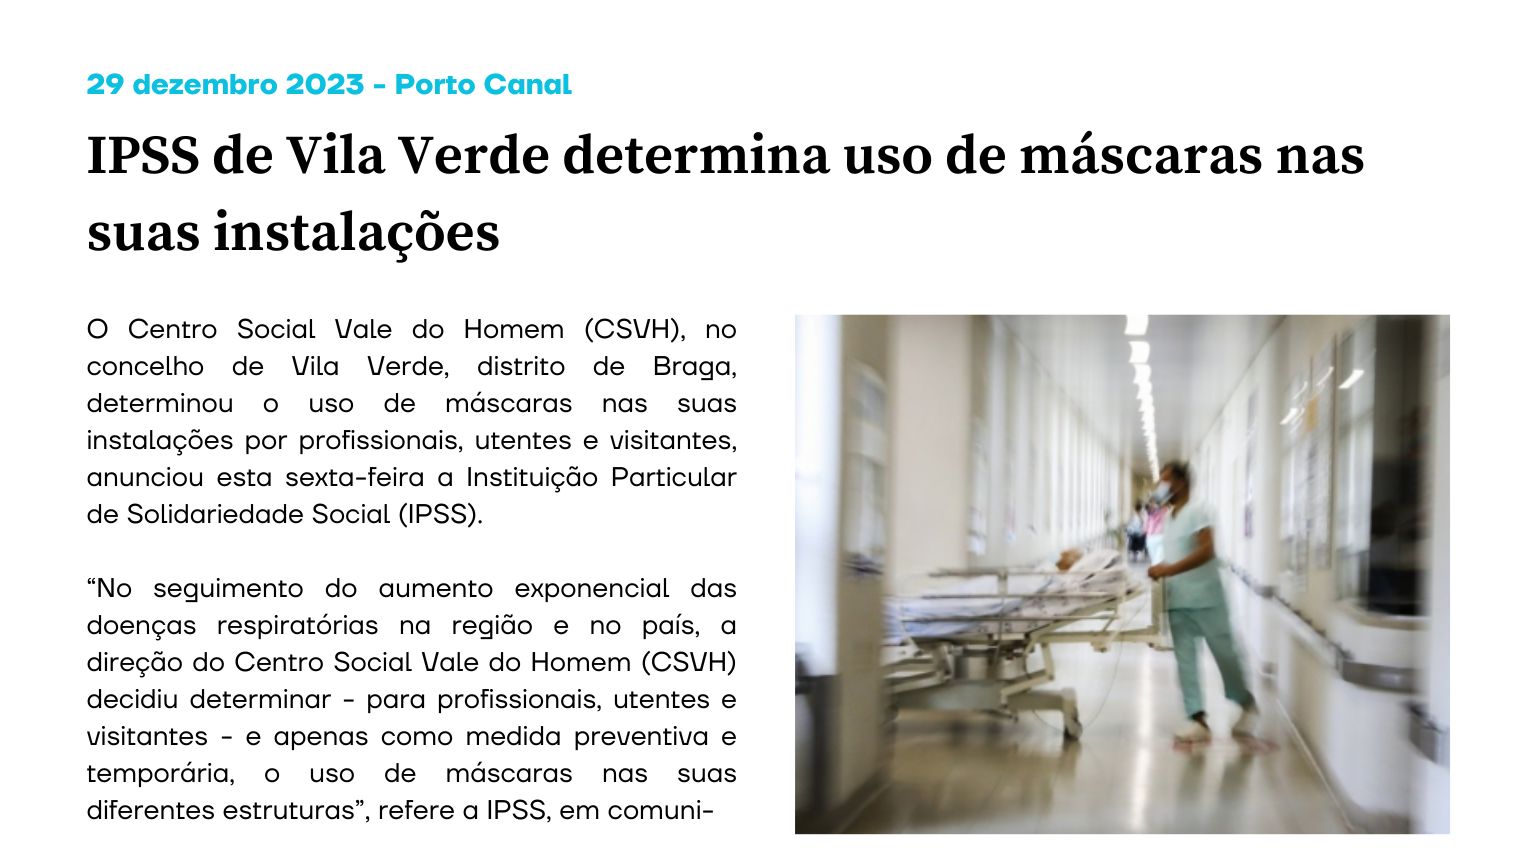 IPSS de Vila Verde determina uso de máscaras nas suas instalações